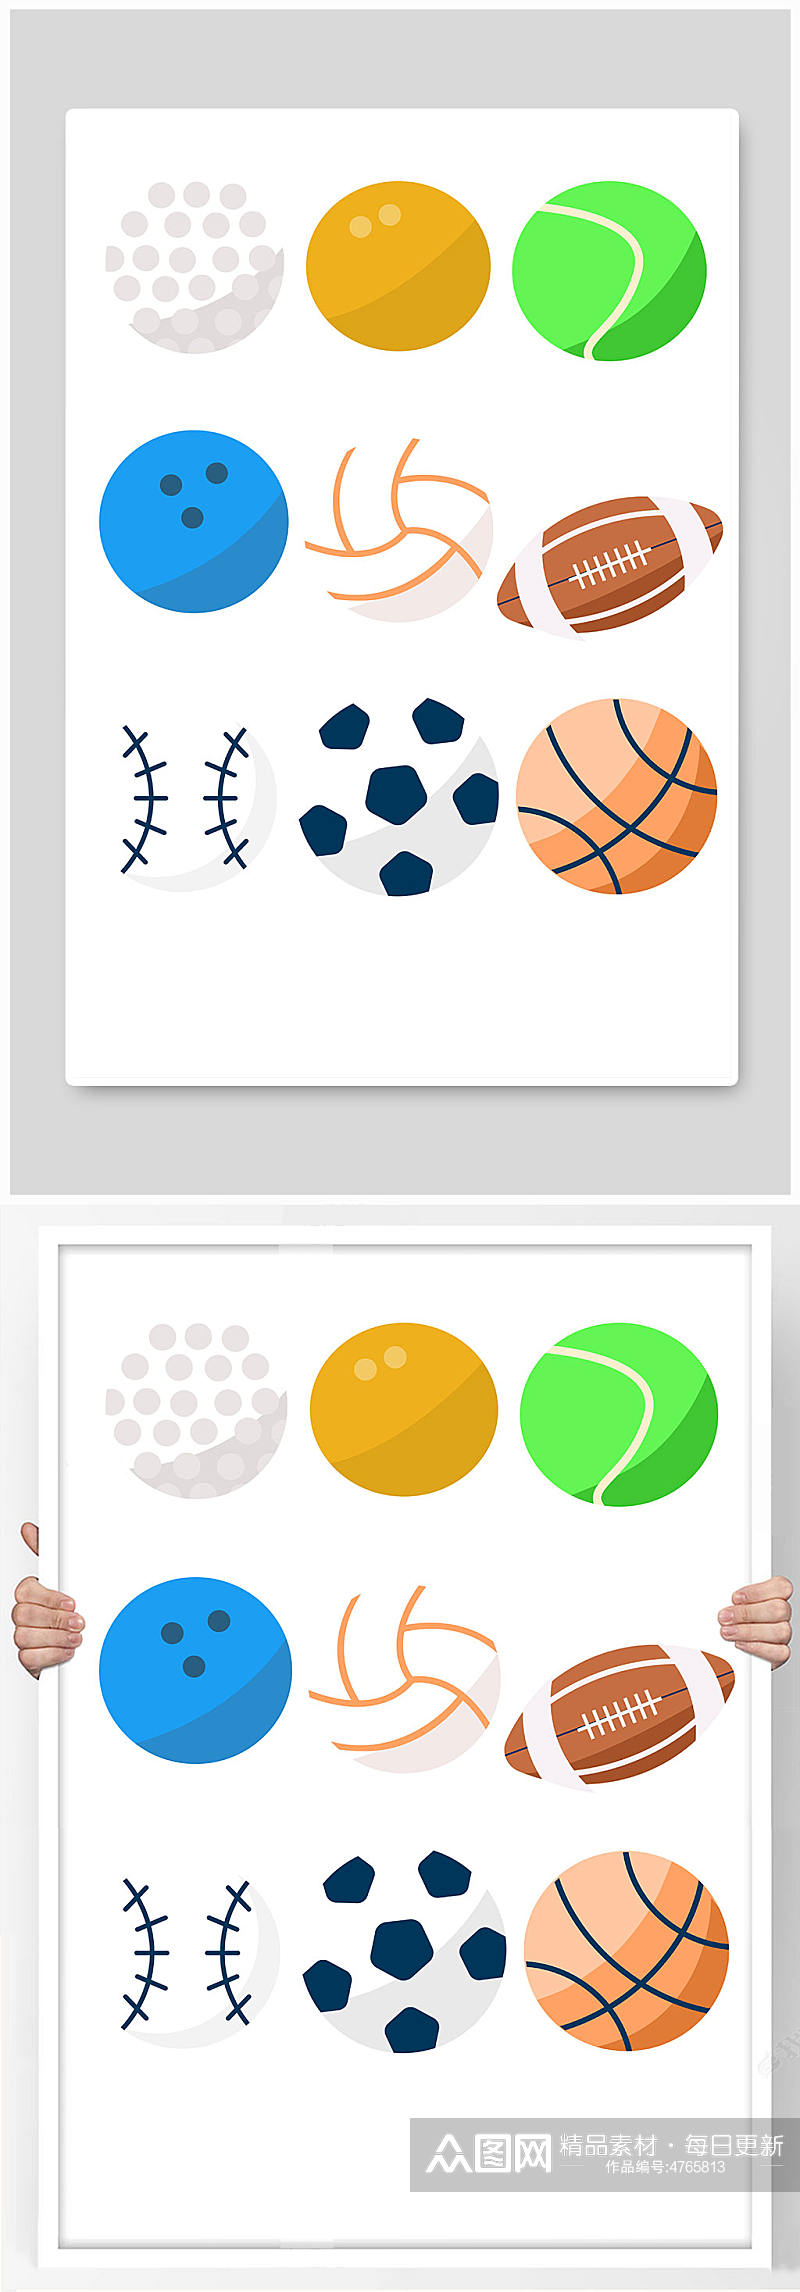 扁平化手绘运动球类元素插画素材